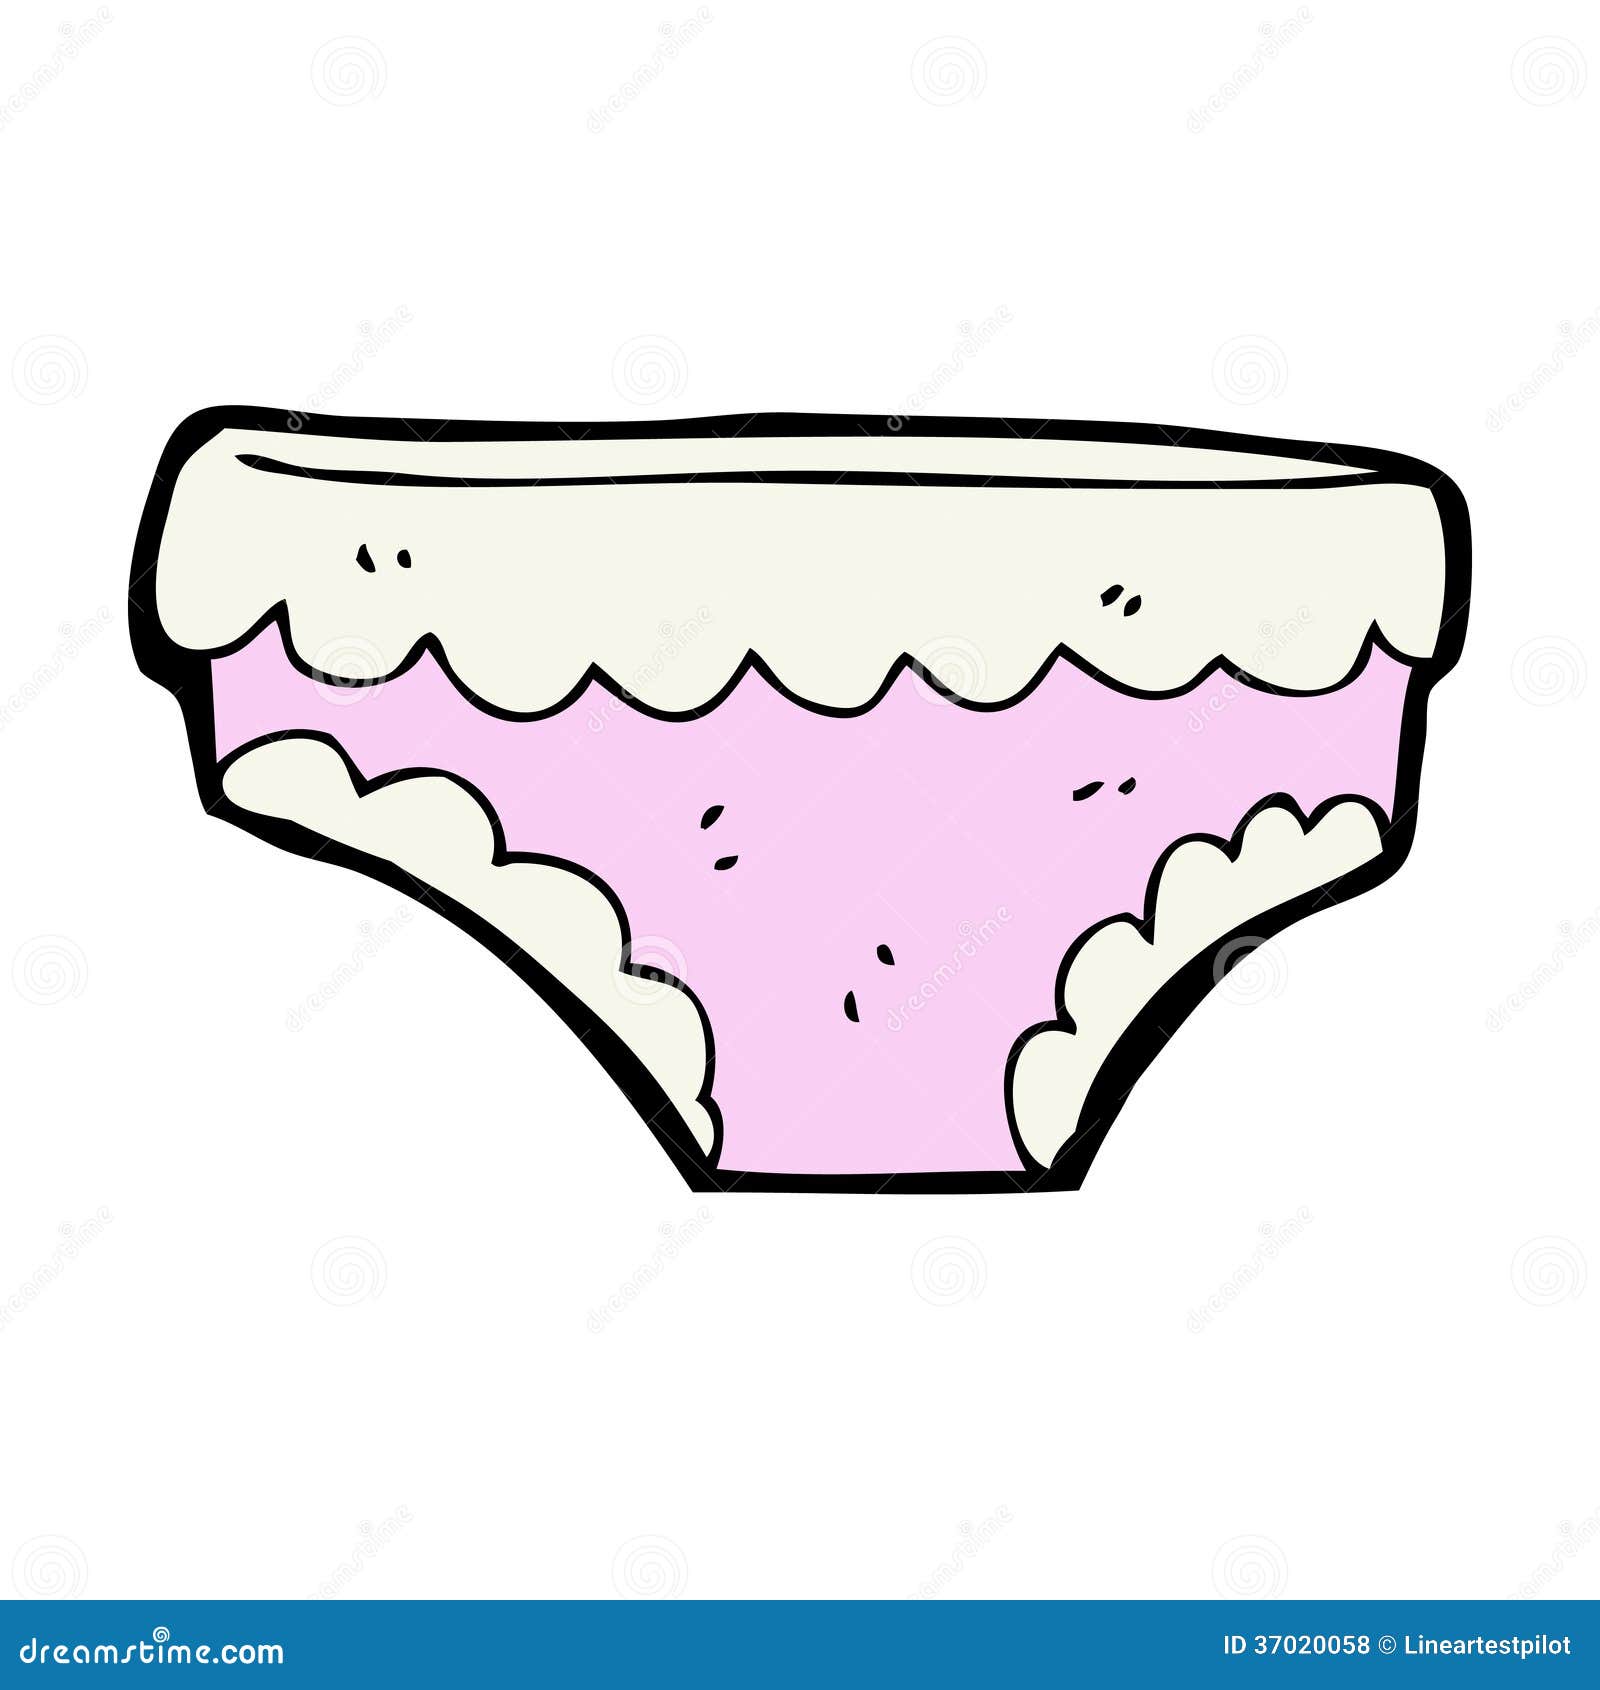 underwear cartoon clip art - photo #5